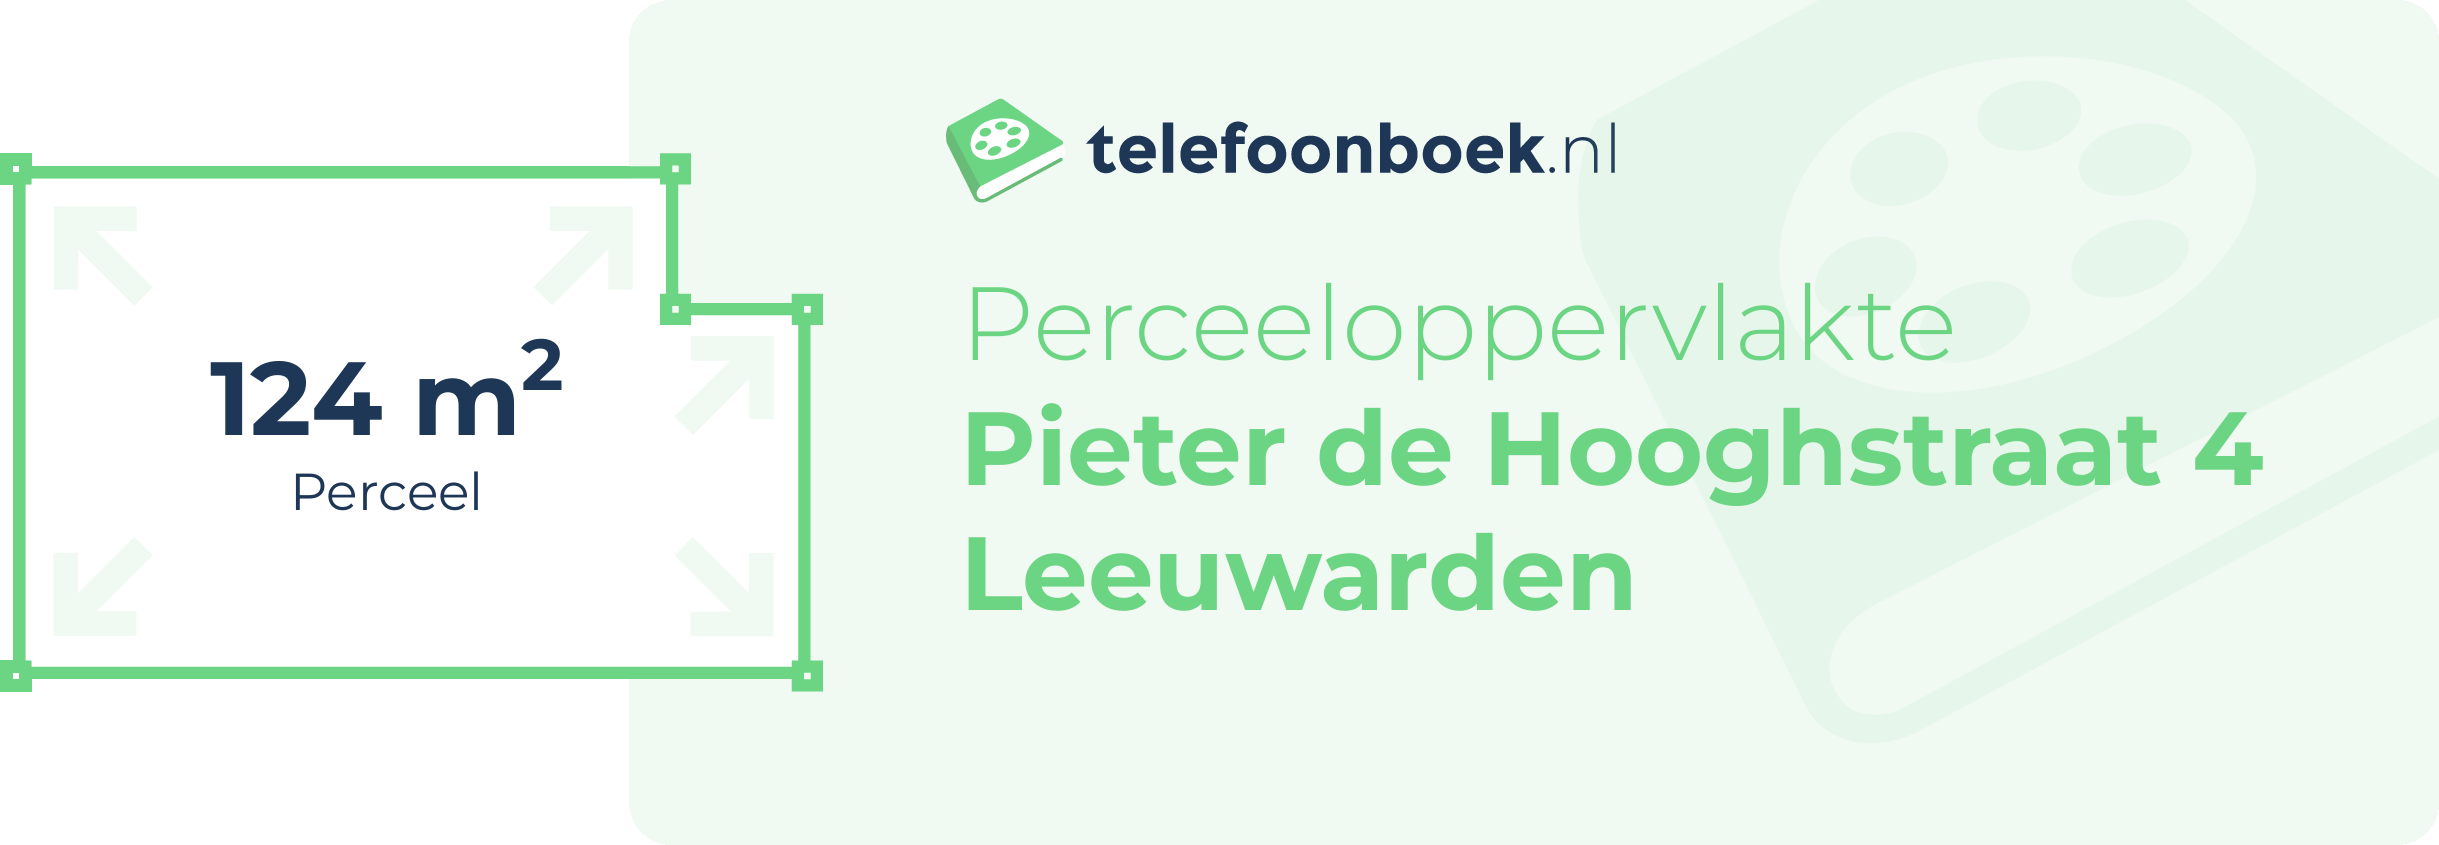 Perceeloppervlakte Pieter De Hooghstraat 4 Leeuwarden